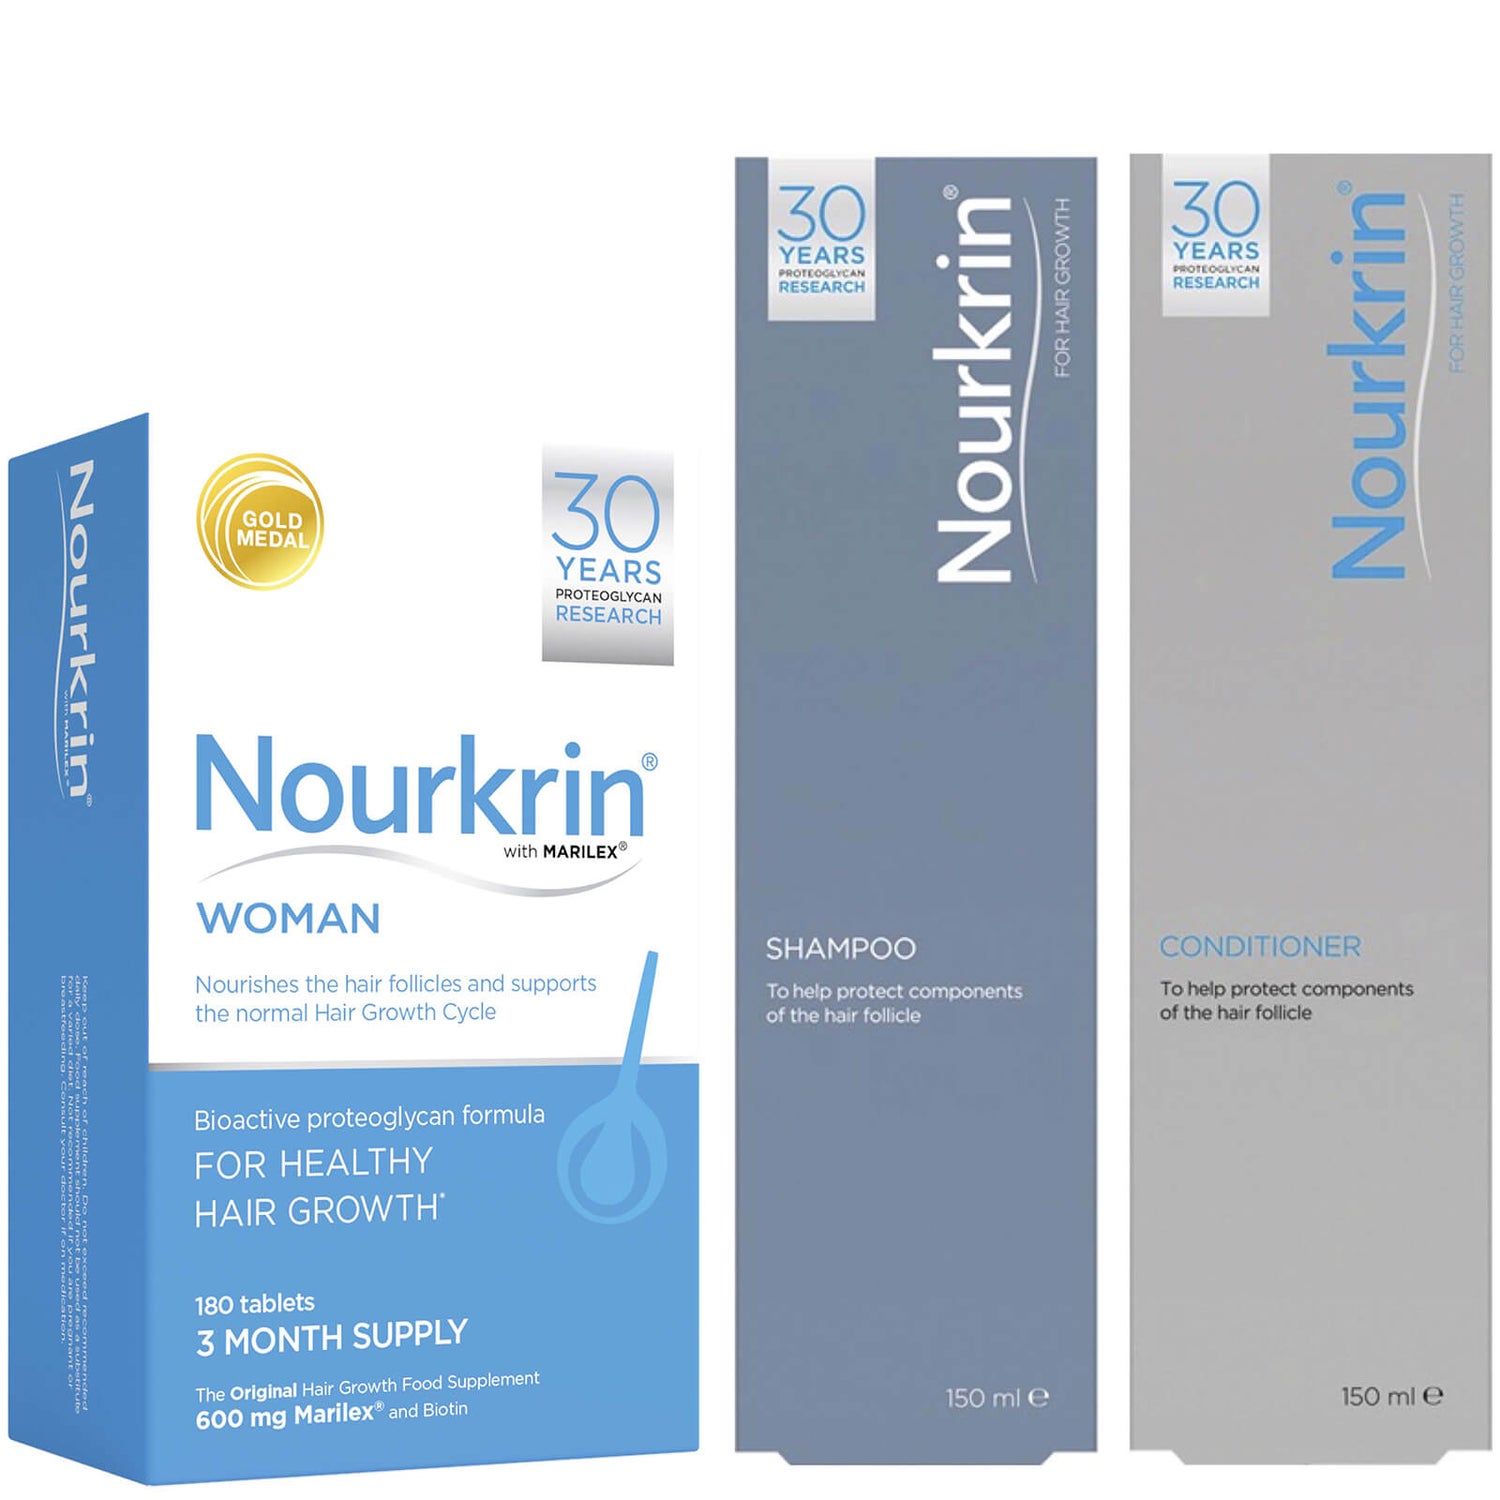 Nourkrin Woman Haarwachstum Set für Frauen - Enthält 180 Tabletten Plus gratis Shampoo und Conditioner (2x150ml)